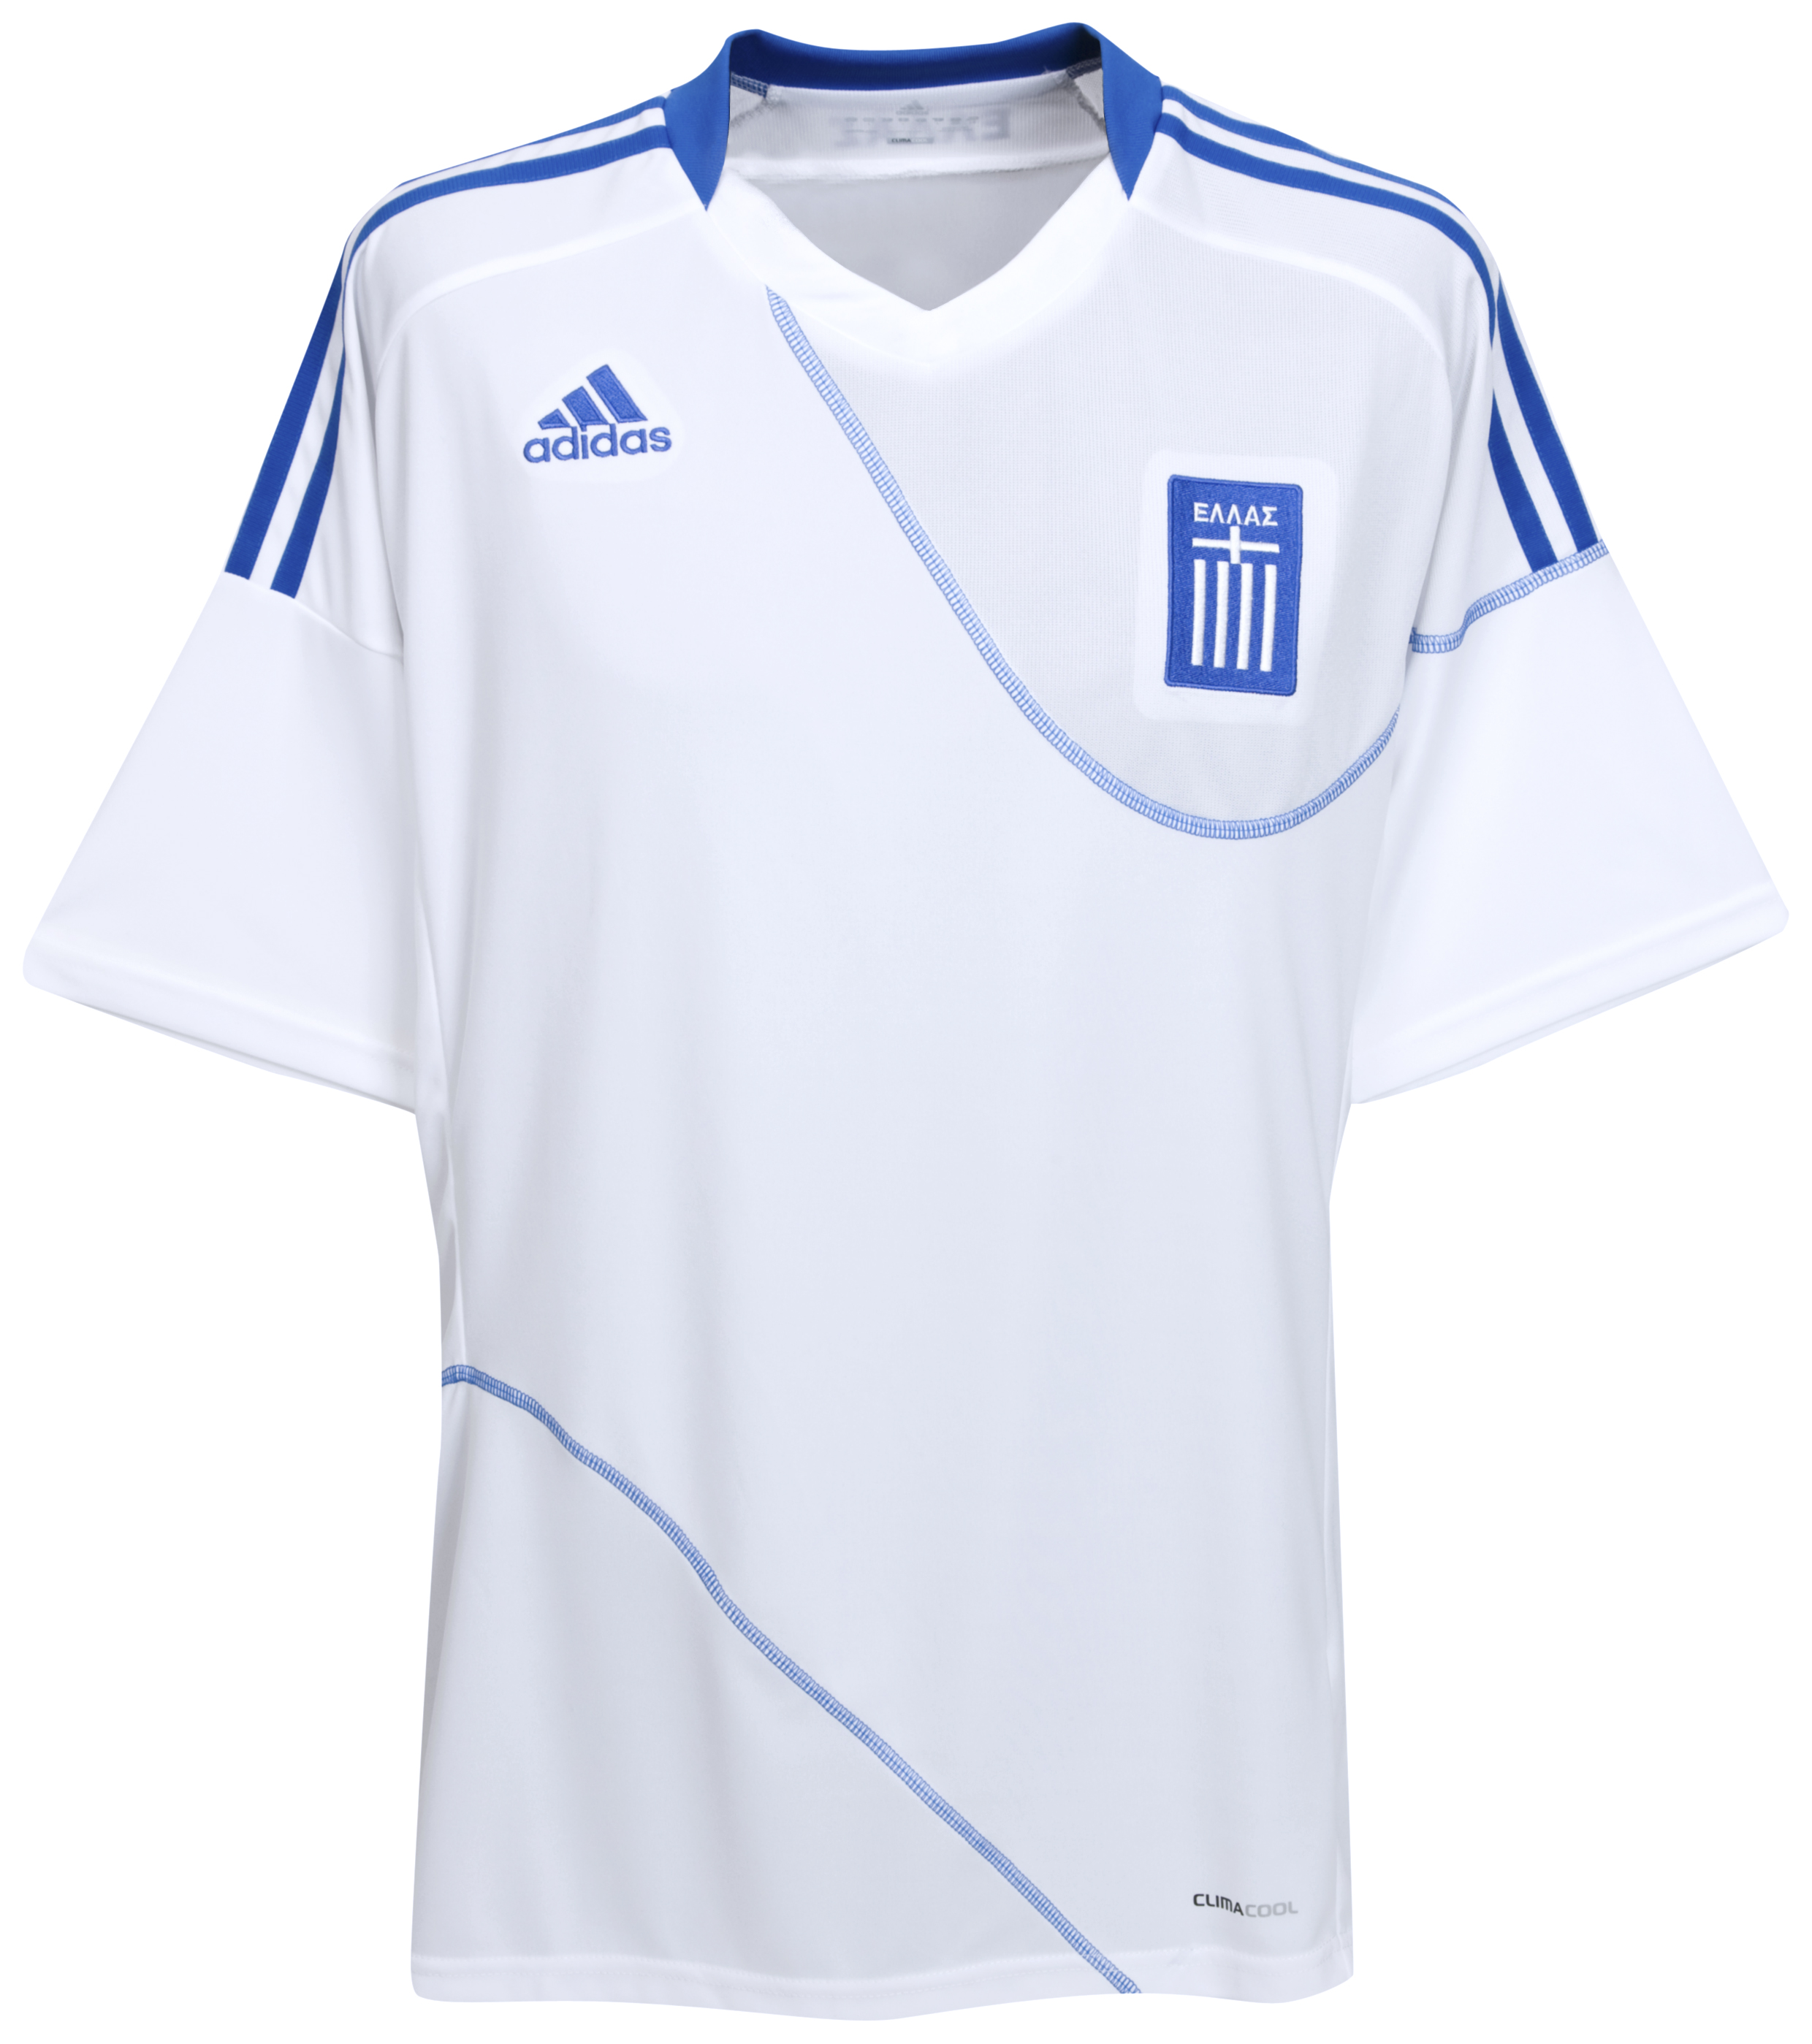 ملابس المنتخبات لكأس العالم2010م Kb-63743